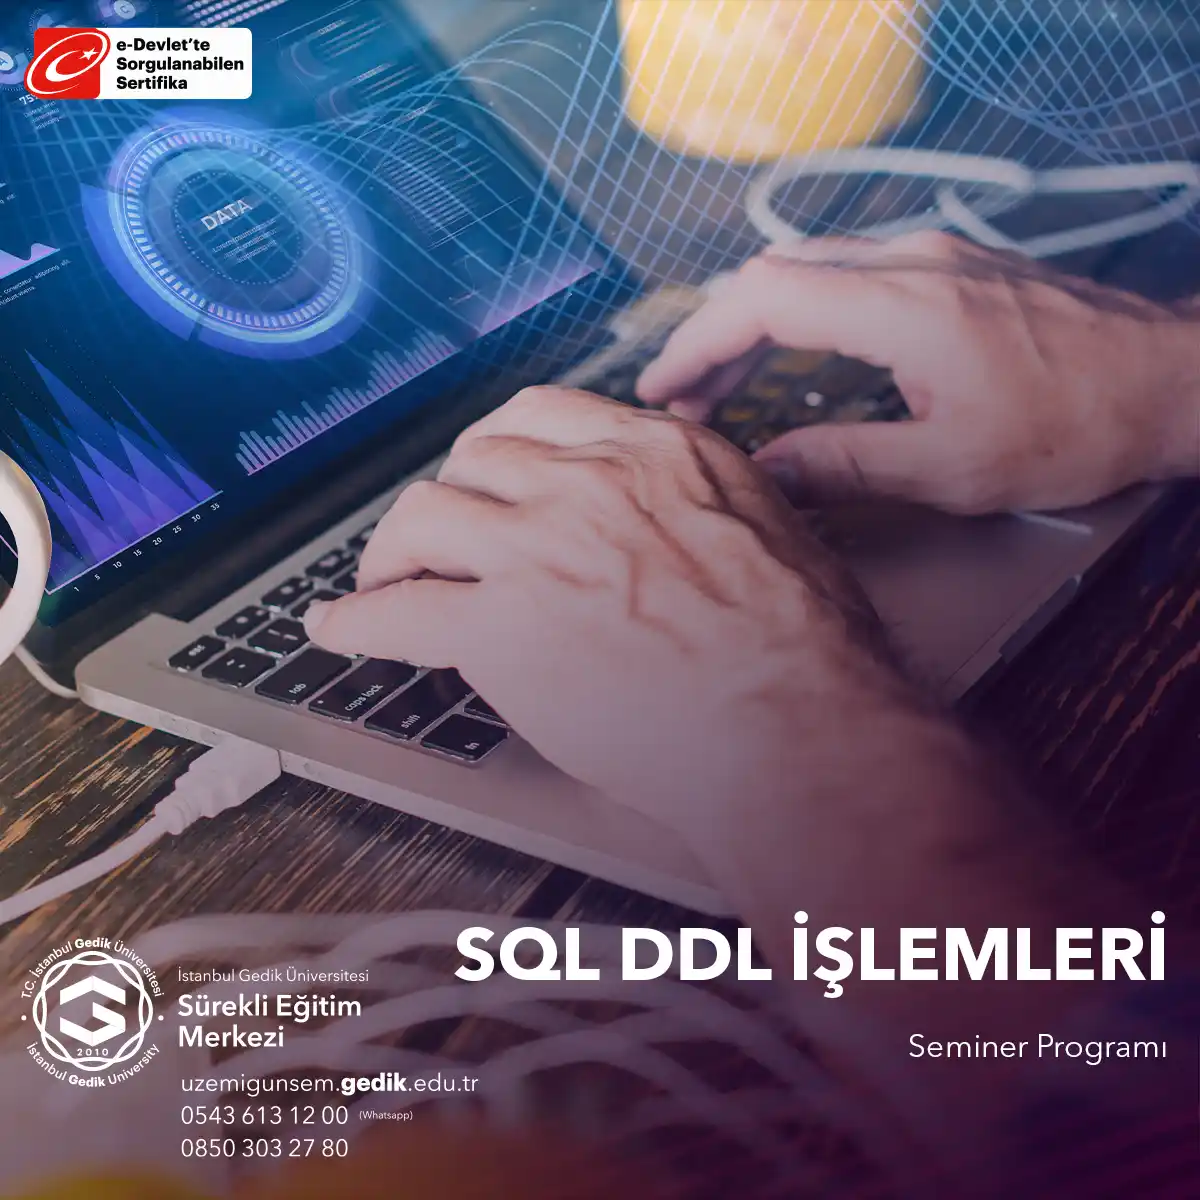 SQL DDL (Data Definition Language) işlemleri, veritabanı şemalarını oluşturmak, değiştirmek ve silmek için kullanılan SQL komutlarını içerir.